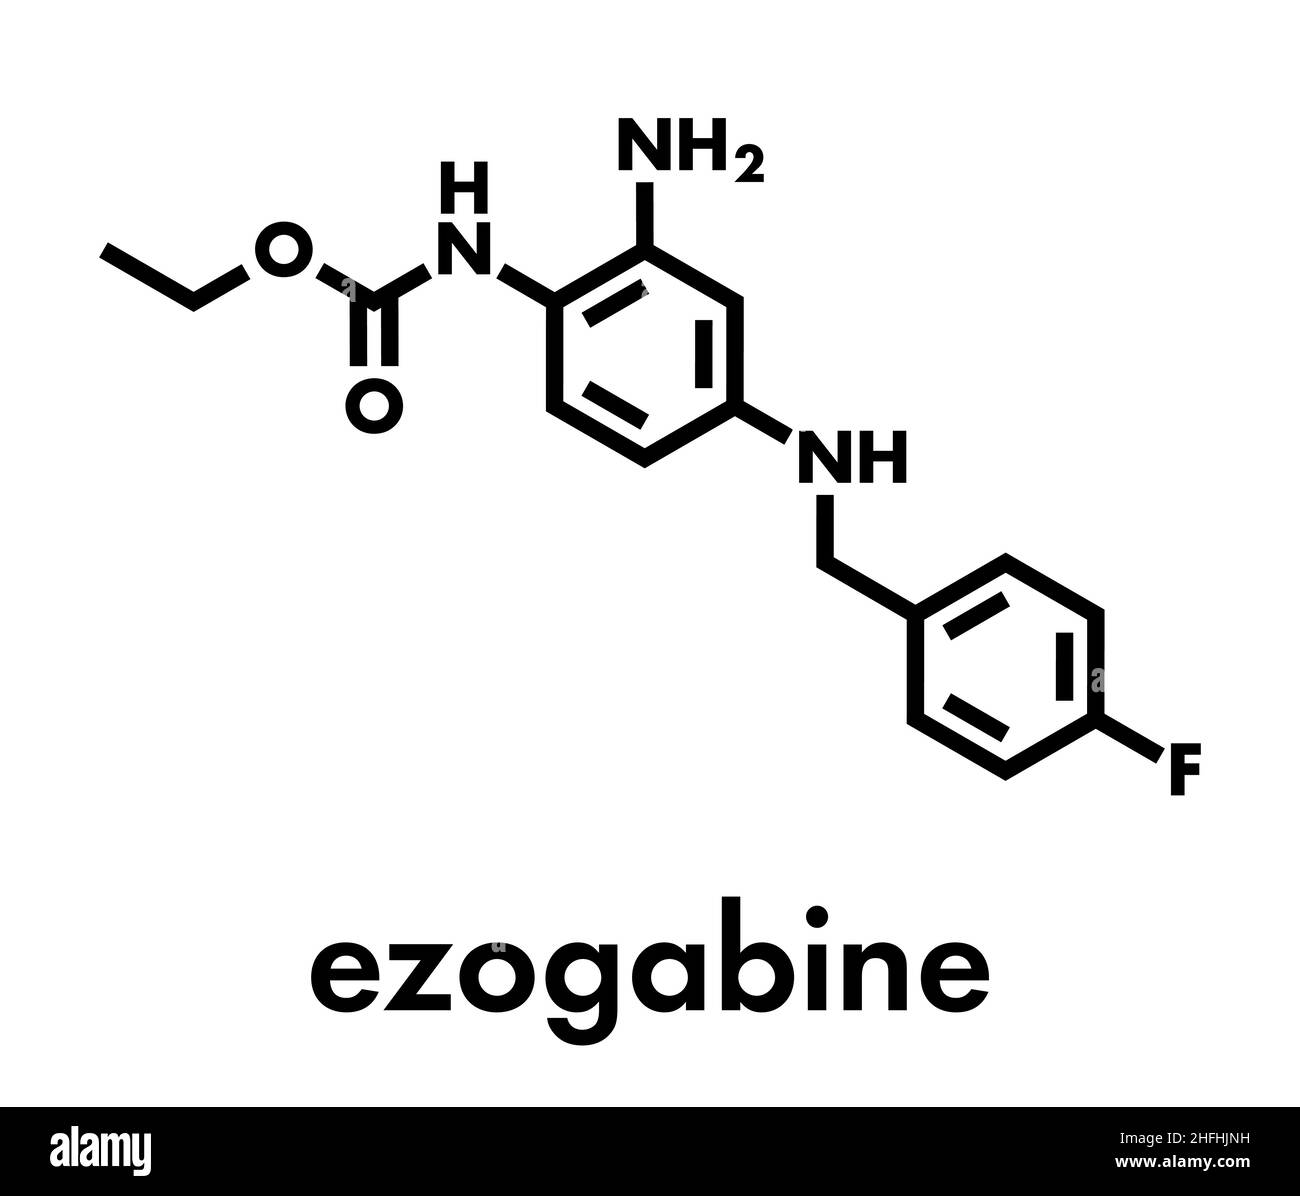 Retigabin (Ezogabin) antikonvulsivans Medikamentenmolekül. Wird bei der Behandlung von Anfällen (Epilepsie) verwendet. Skelettformel. Stock Vektor